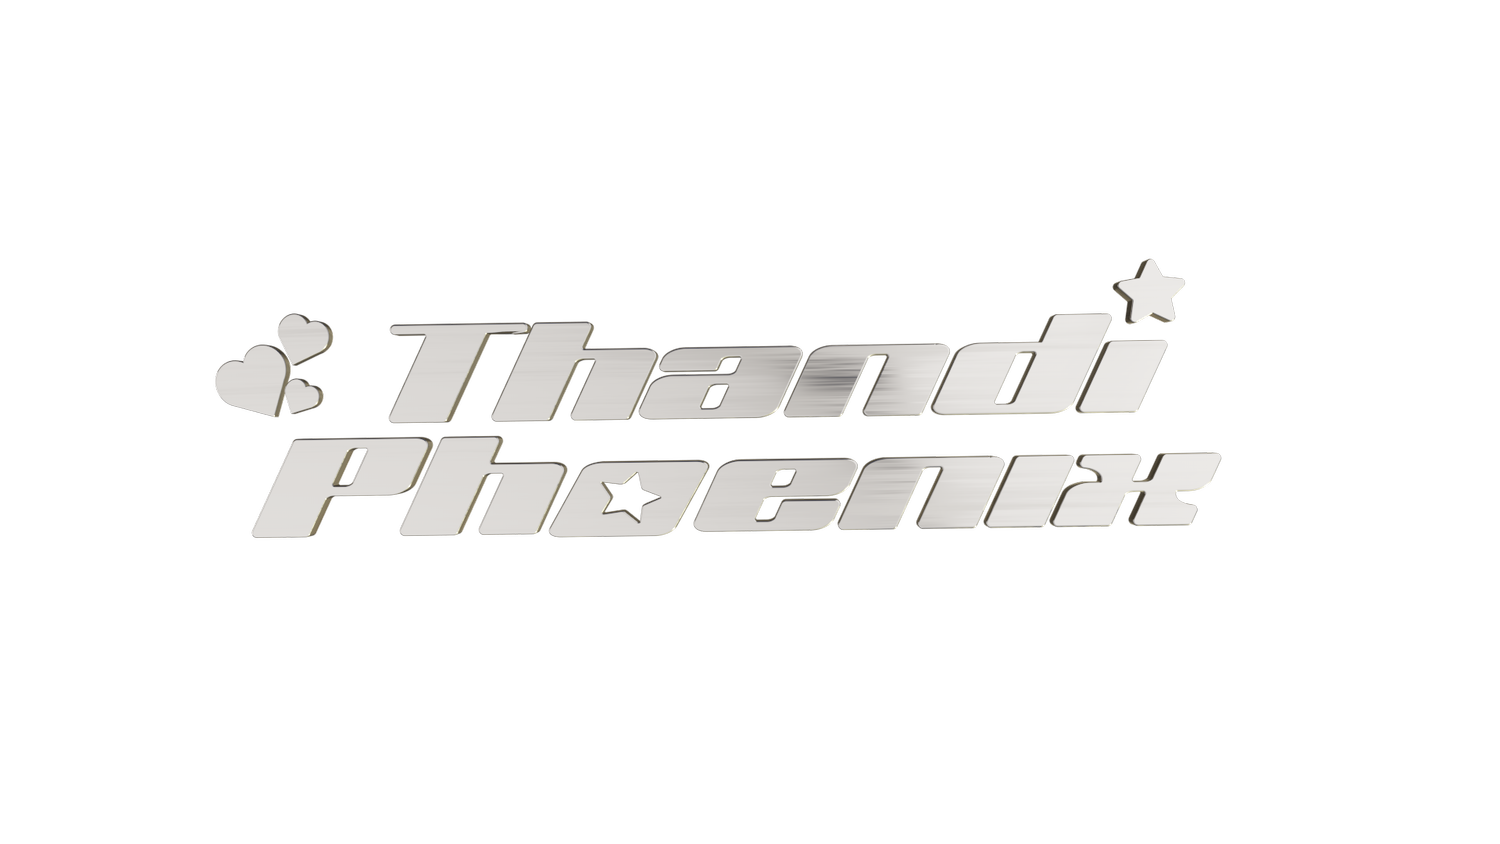 Thandi Phoenix